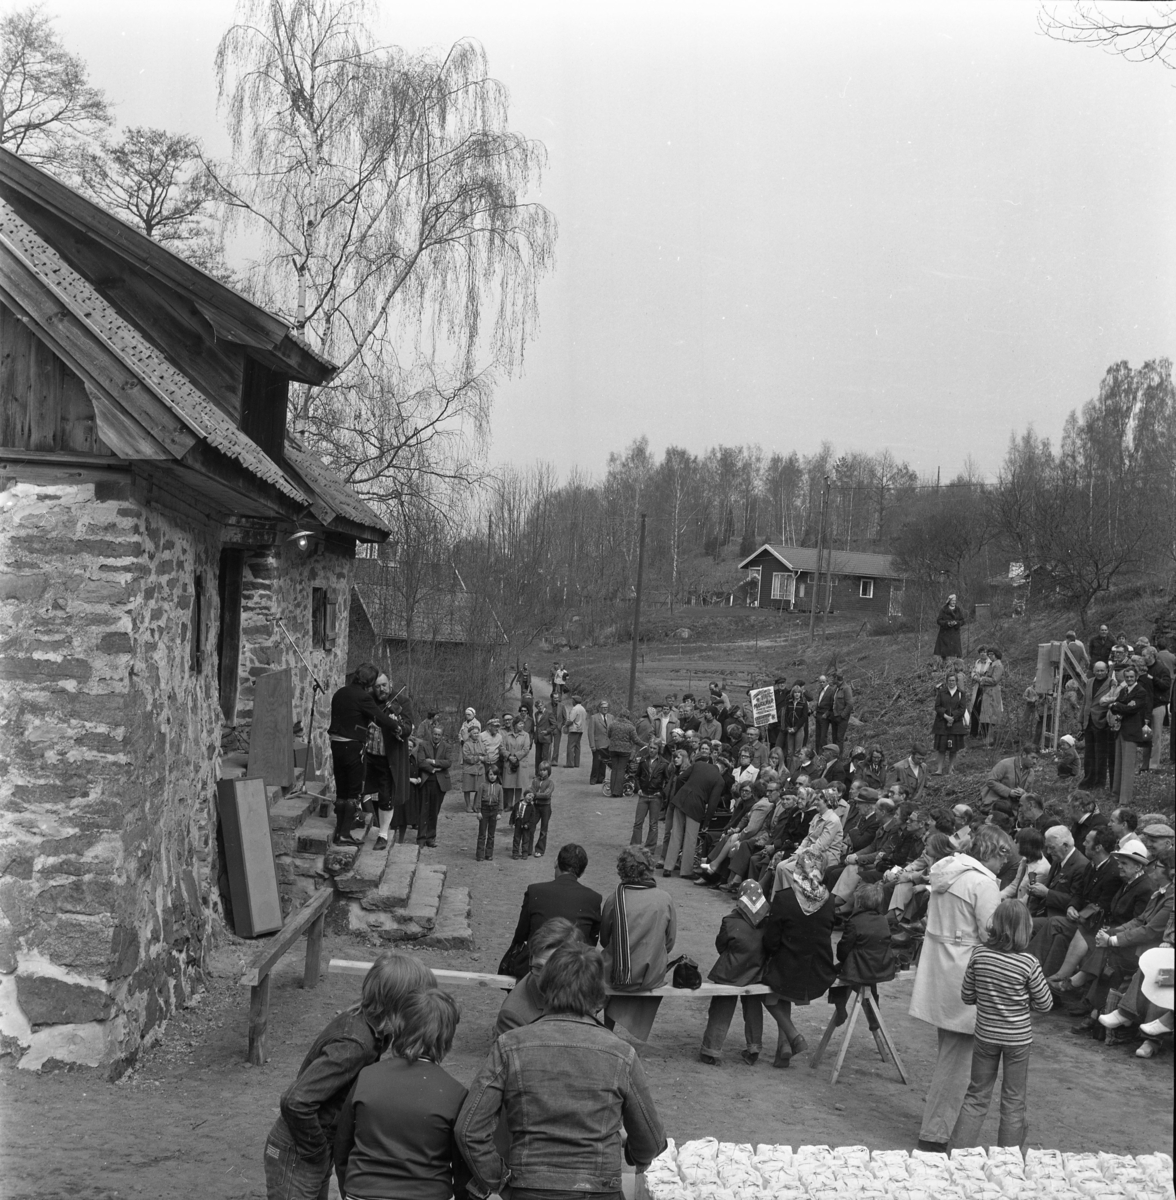 En folksamling kring Rasmus kvarn i Röttle. Två spelmän på trappan till kvarnen. I förgrunden står ett bord med mjölpåsar.